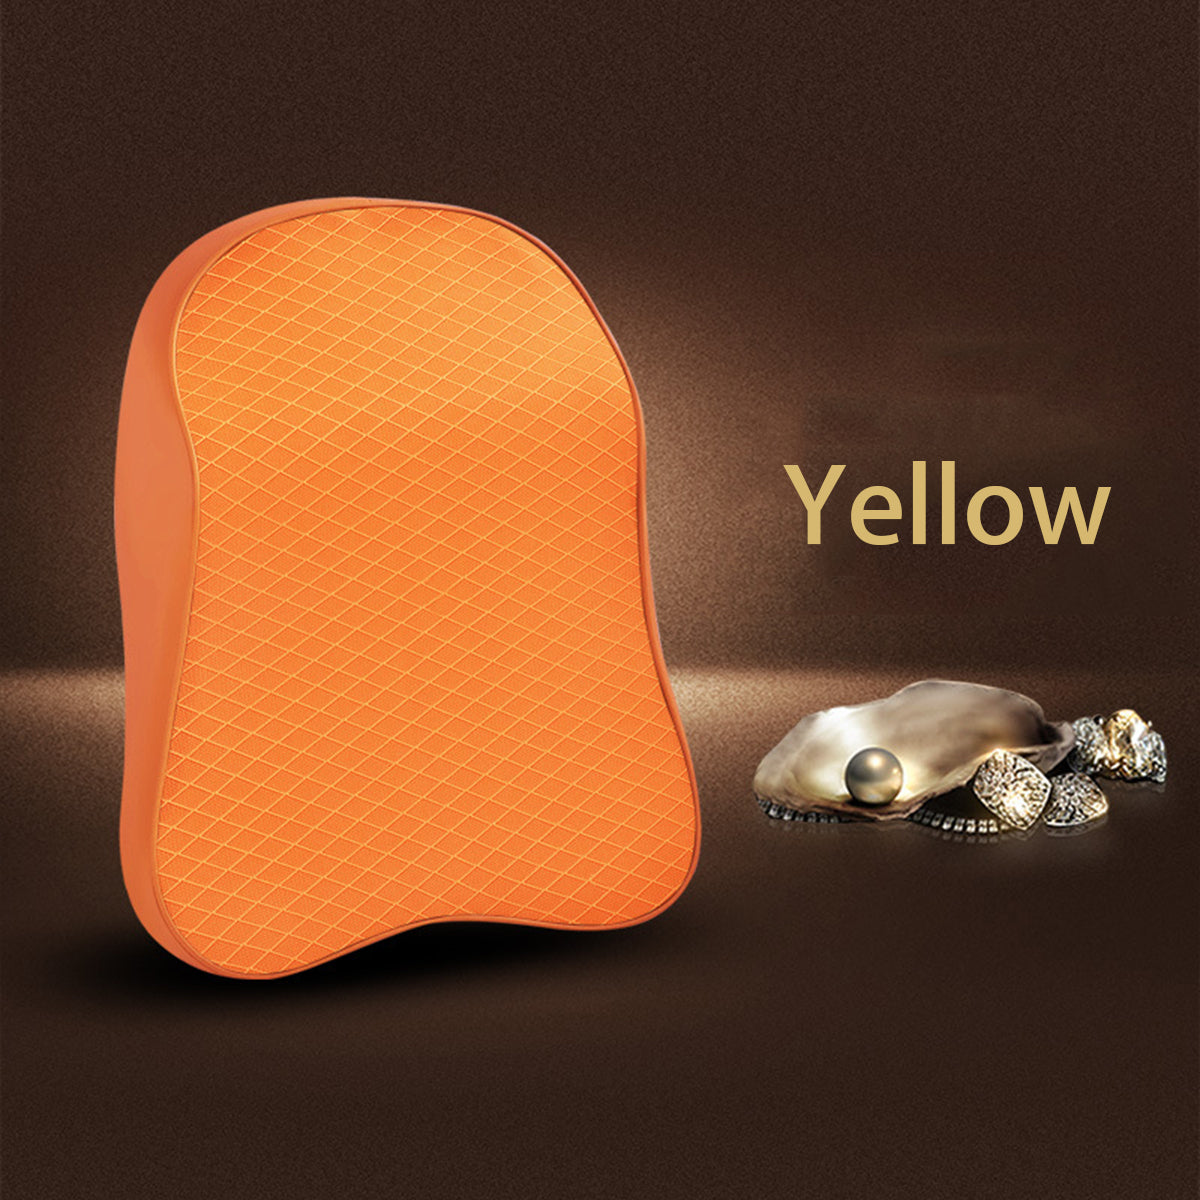 3D Memory Foam Car Neck Pillow Head Rest Seat Cushion Headrest Adjustable Soft Breathable - Auto GoShop